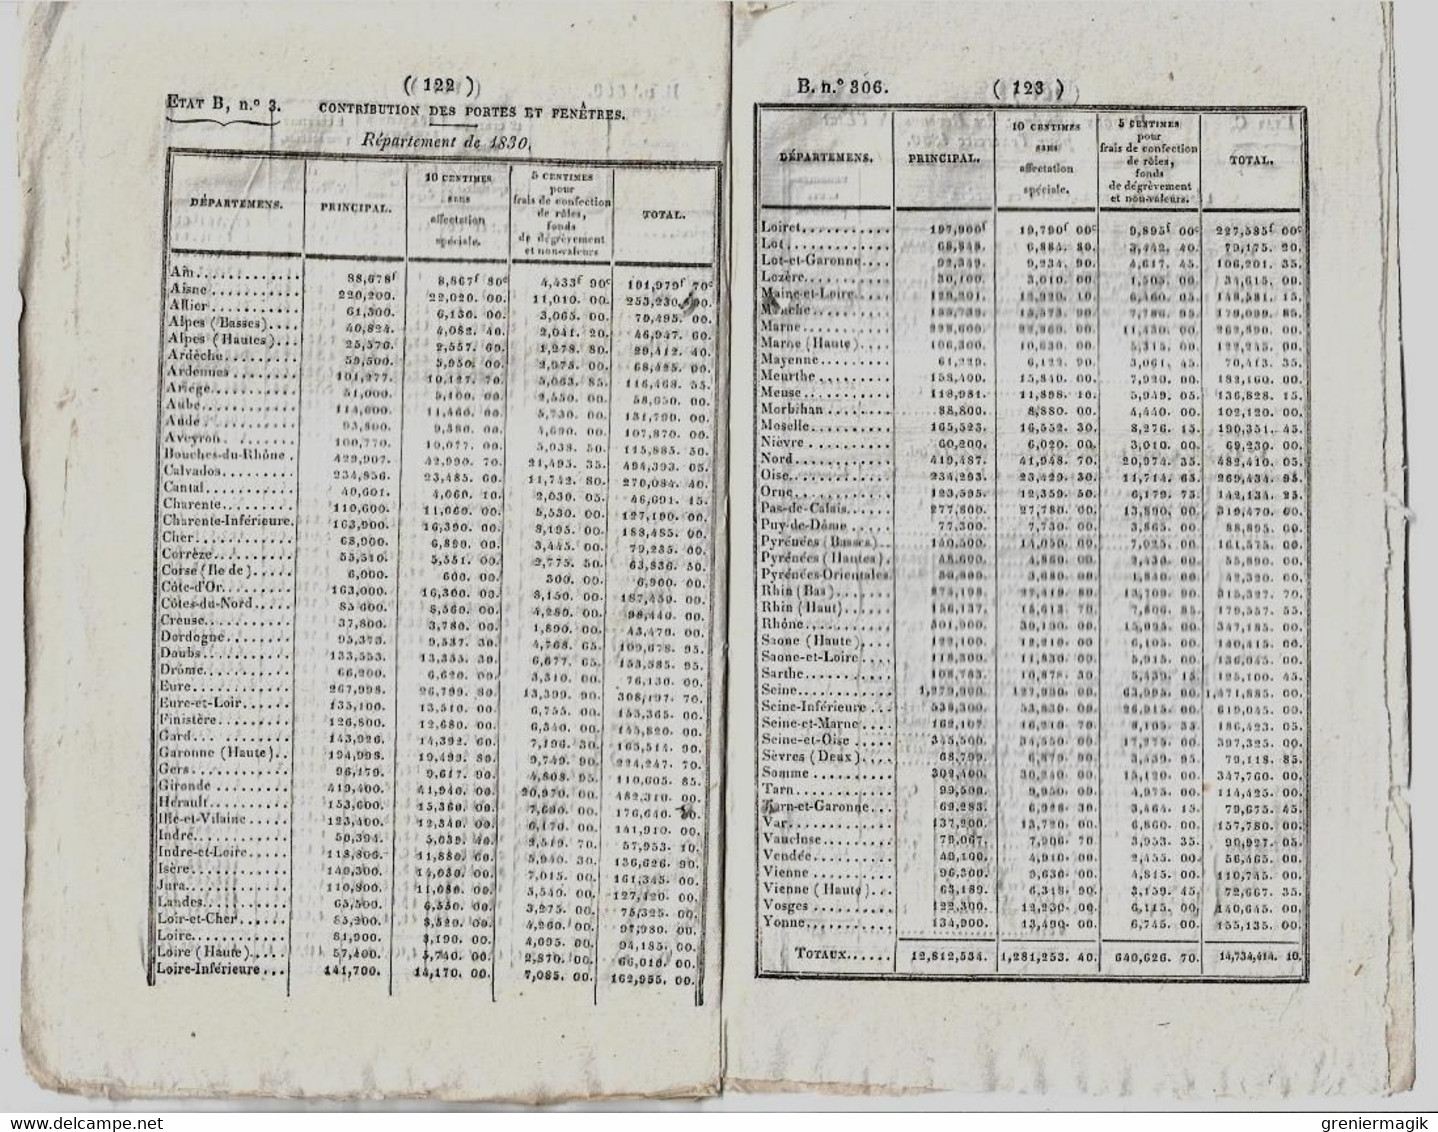 Bulletin des Lois 306 1829 Fixation du budget dépenses et recettes 1830 (Finances)/Baron Baudelet de Livois/Donations